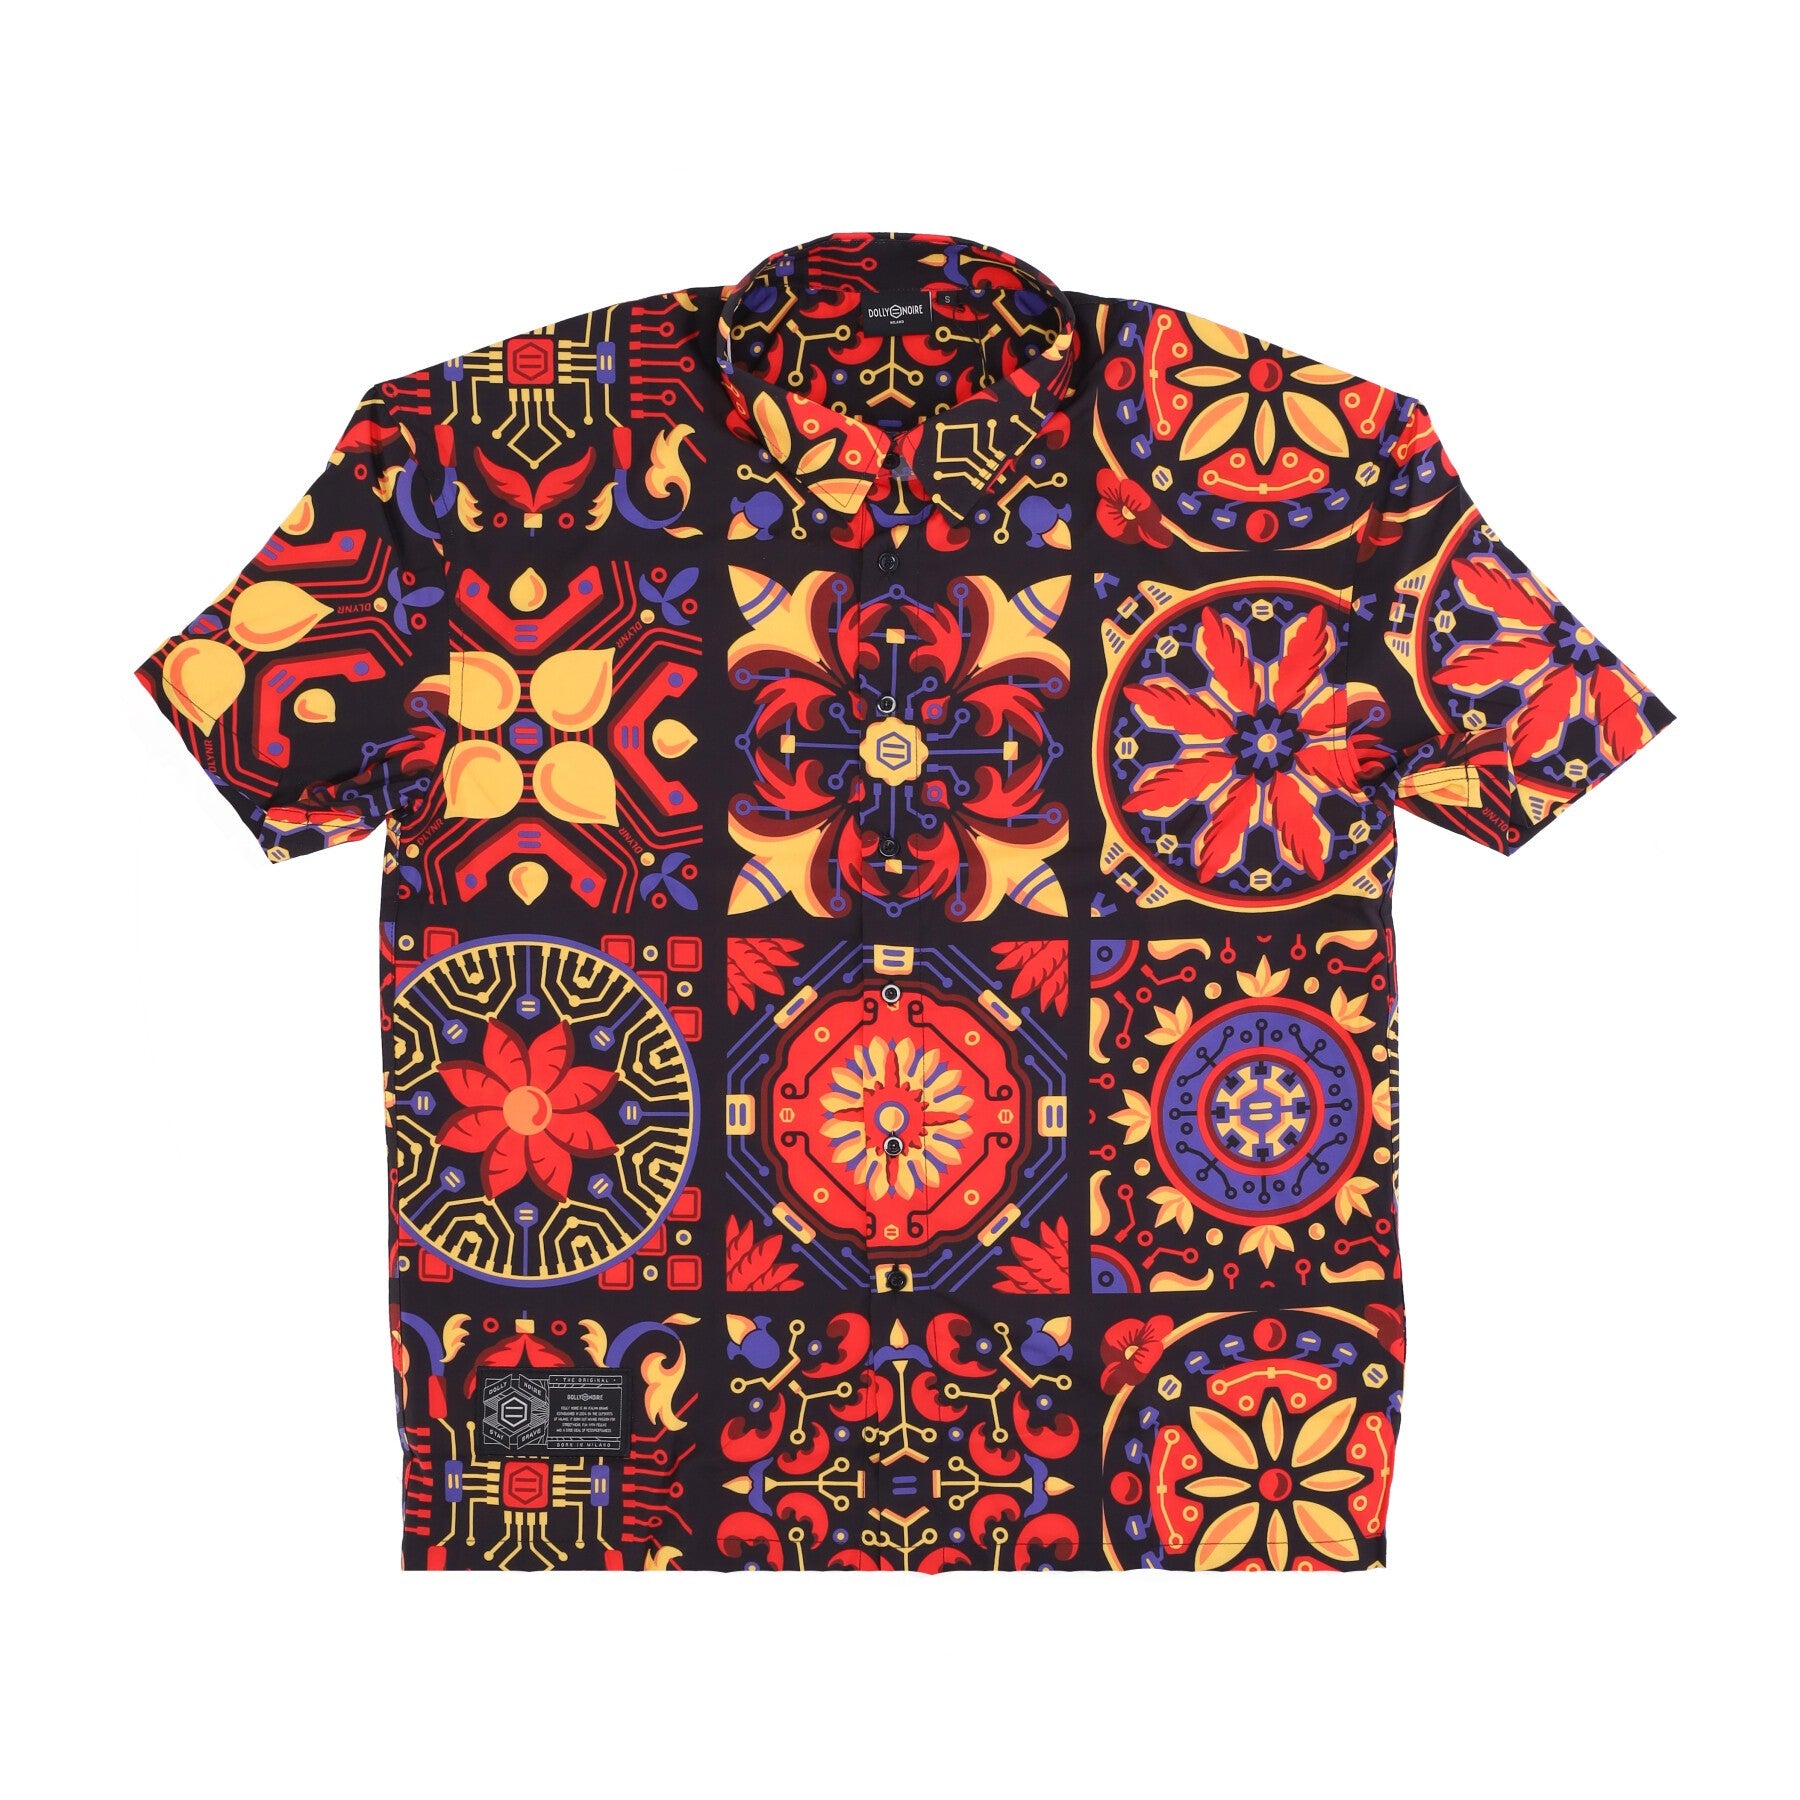 Men's Short Sleeve Shirt Red Majolica Pattern Oversize Shirt Multi